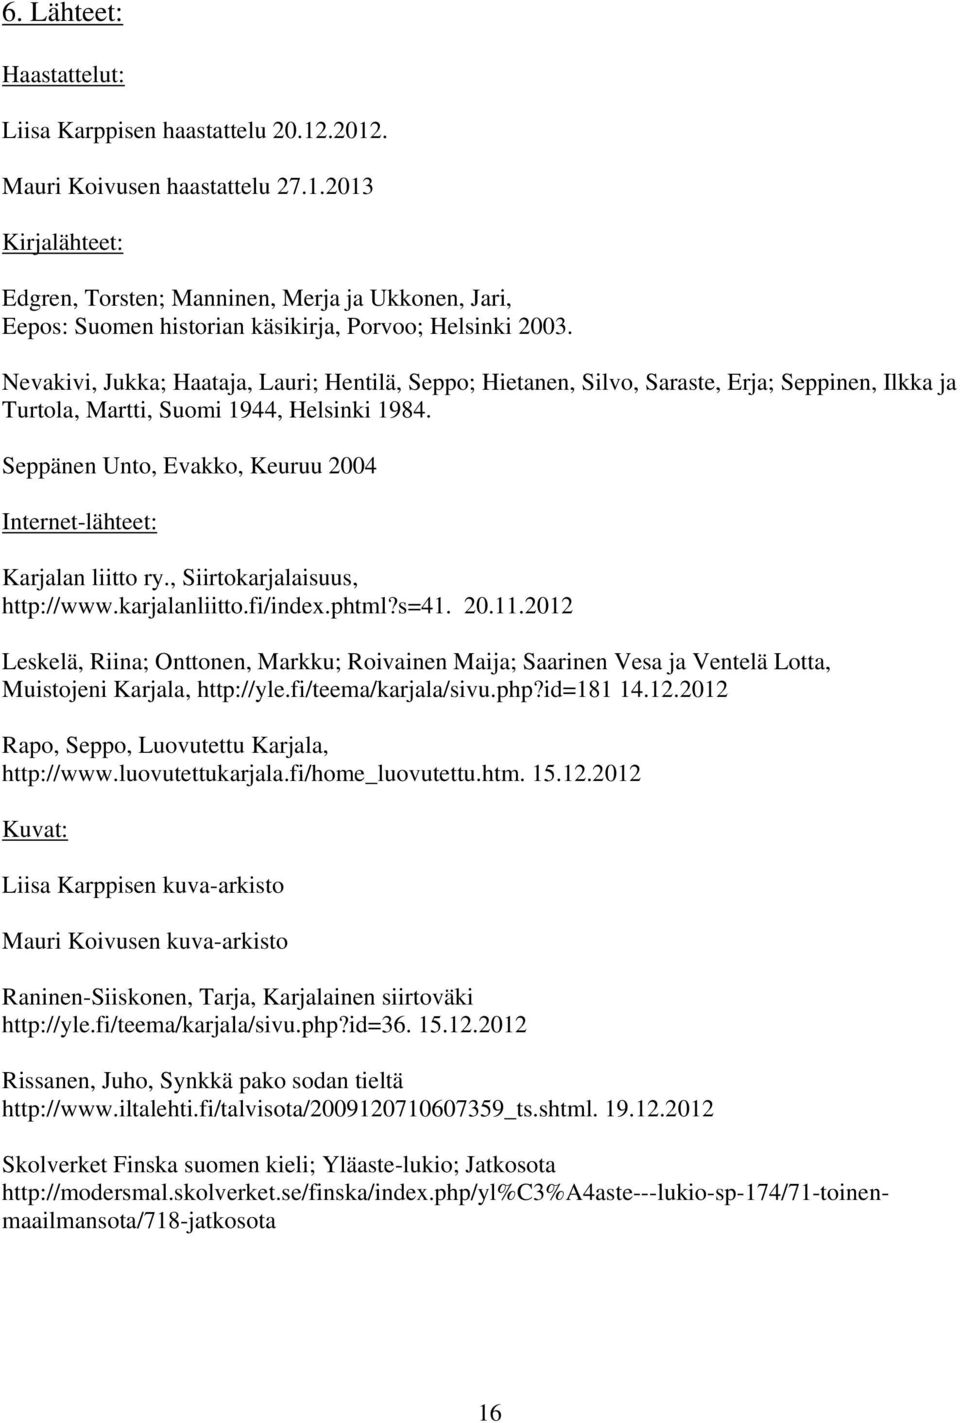 Seppänen Unto, Evakko, Keuruu 2004 Internet-lähteet: Karjalan liitto ry., Siirtokarjalaisuus, http://www.karjalanliitto.fi/index.phtml?s=41. 20.11.